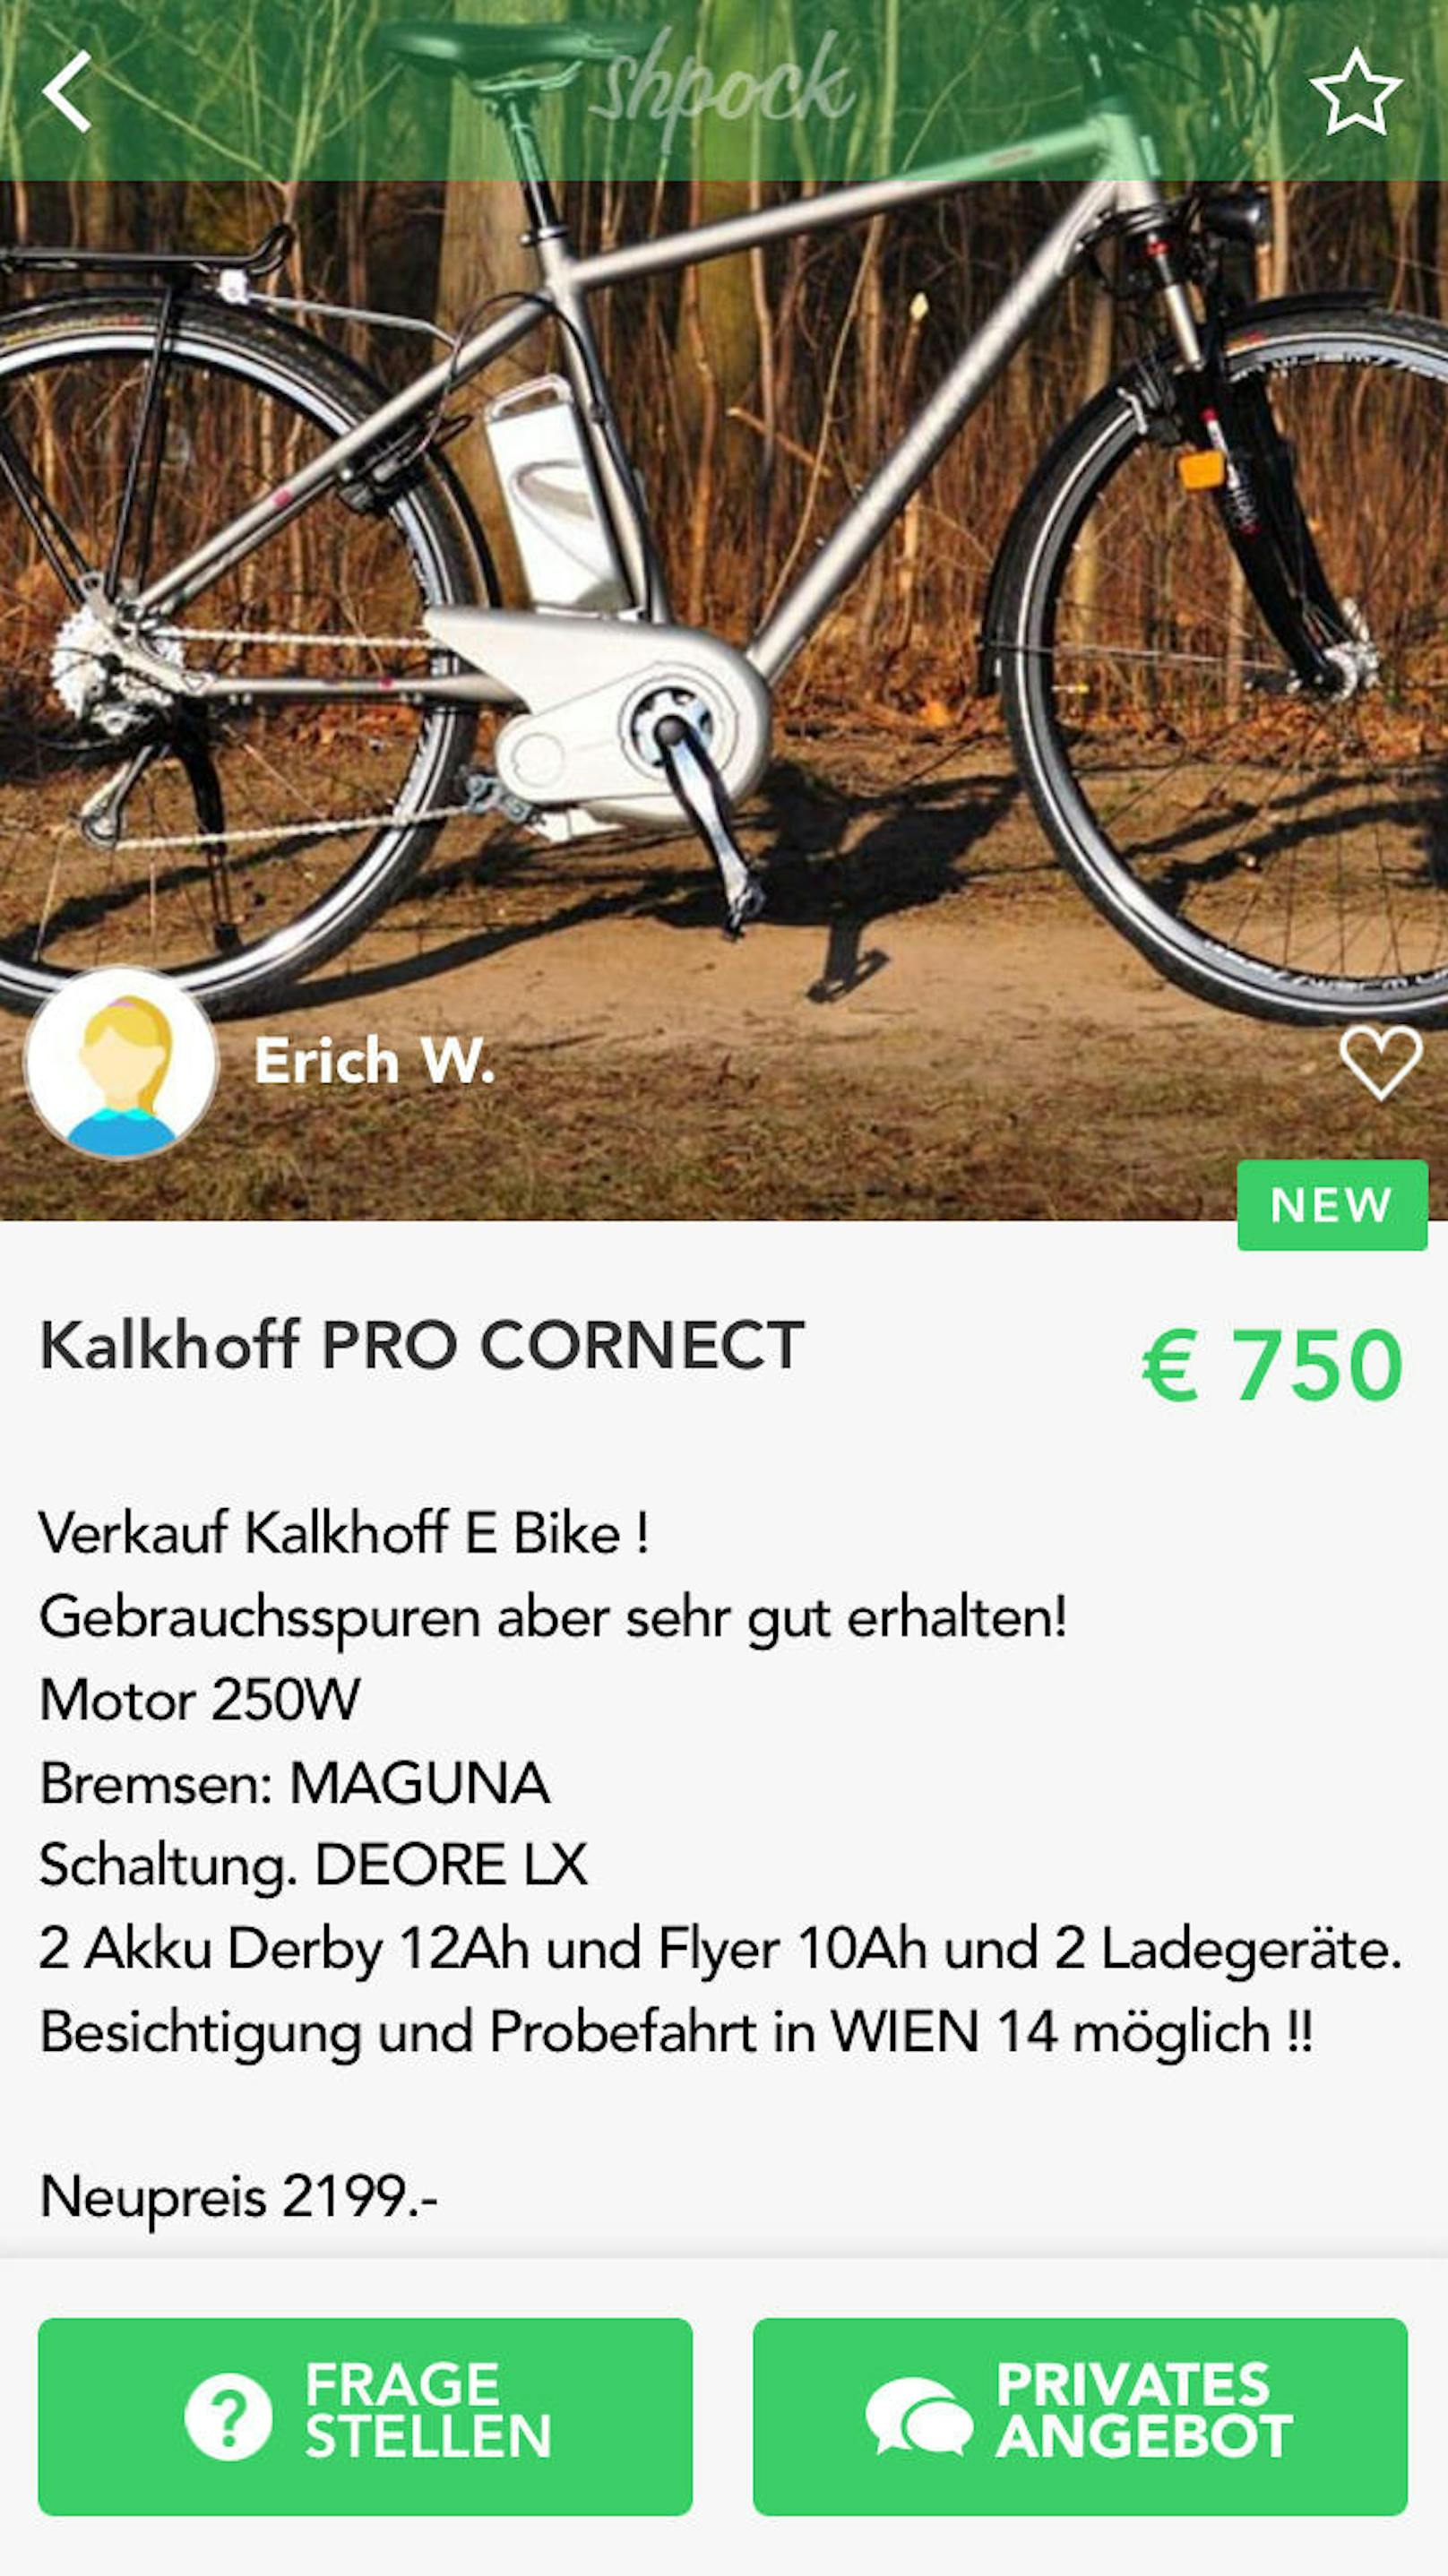 Fast jedes dritte Fahrrad in Österreich ist ein E-Bike, Tendenz steigend. Das elektrische Fahrrad ist heißbegehrt. Die hohen Anschaffungskosten jenseits der 1.000-Euro-Marke sorgen dafür, dass die Nachfrage für gebrauchte E-Bikes steigt, wie eine aktuelle Analyse der Marktplatz-App Shpock verdeutlicht. Auf der Marktplatz-App Shpock ist das E-Bike seit 2018 nach dem Mountainbike das beliebteste Rad, die Suchanfragen steigen seit letztem Jahr rapide. Die Preise liegen meist weit unter dem originalen Verkaufspreis. 